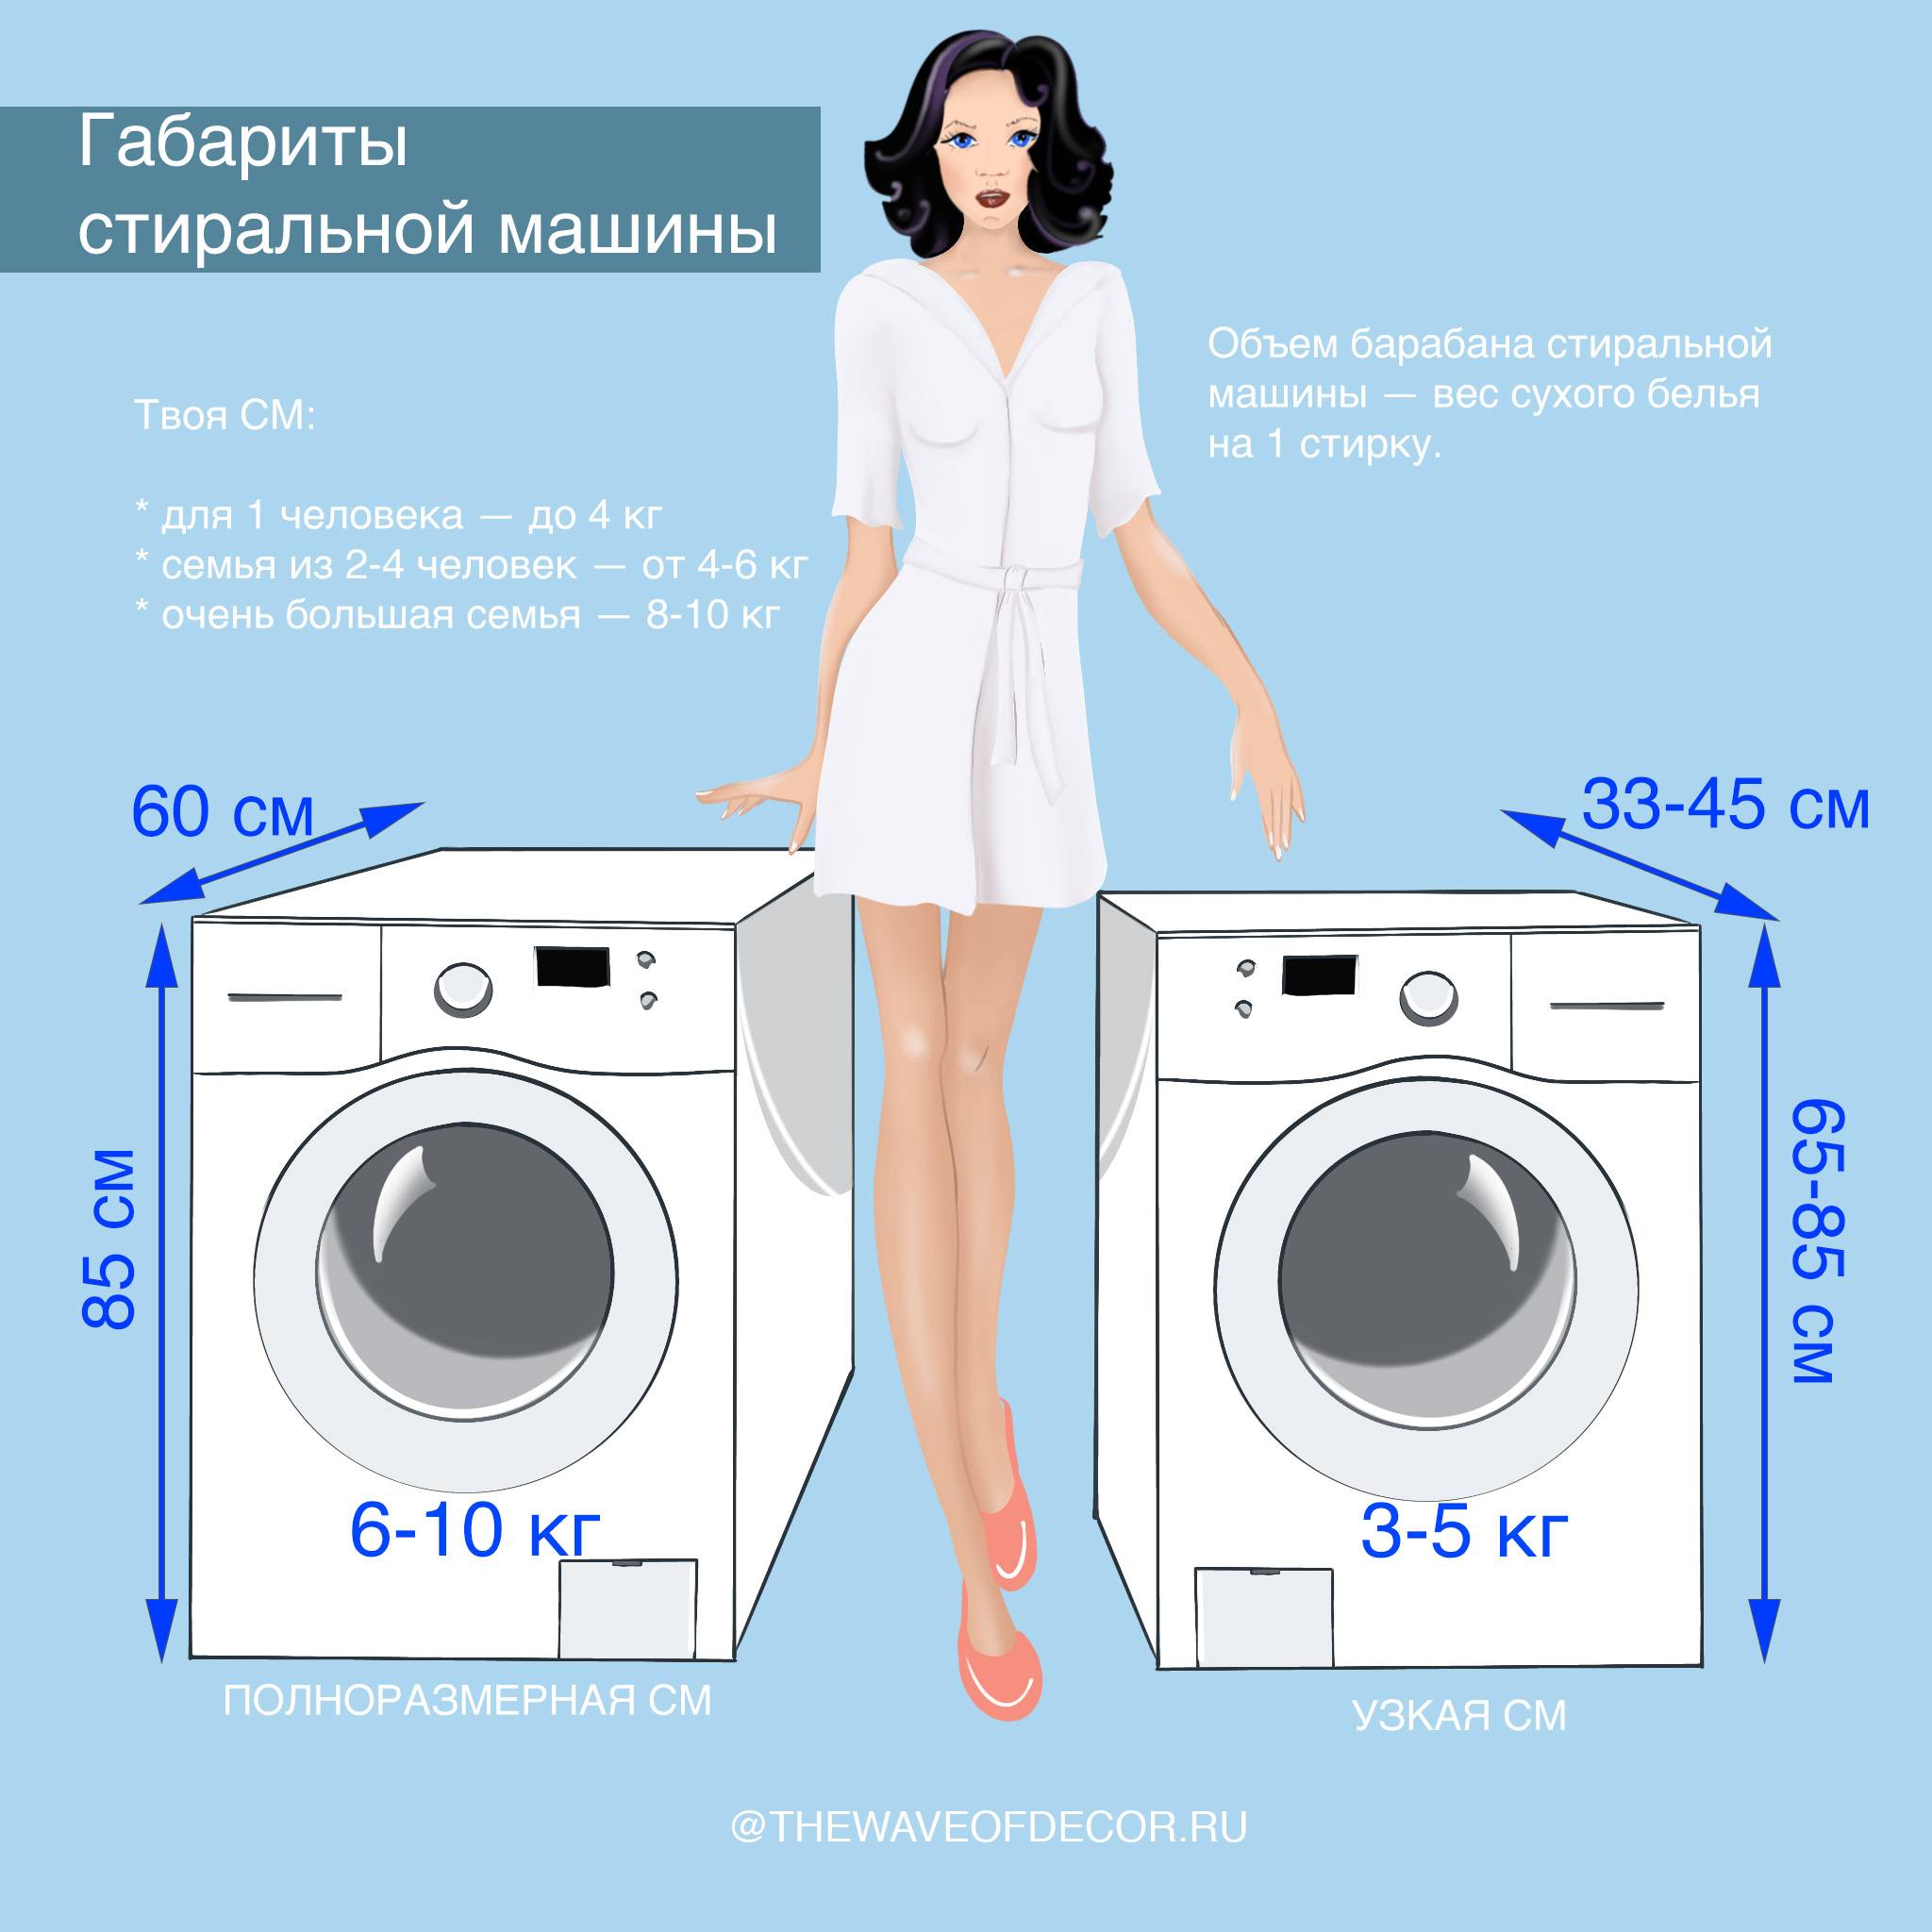 Размеры стиральный машин, ширина, высота и вес